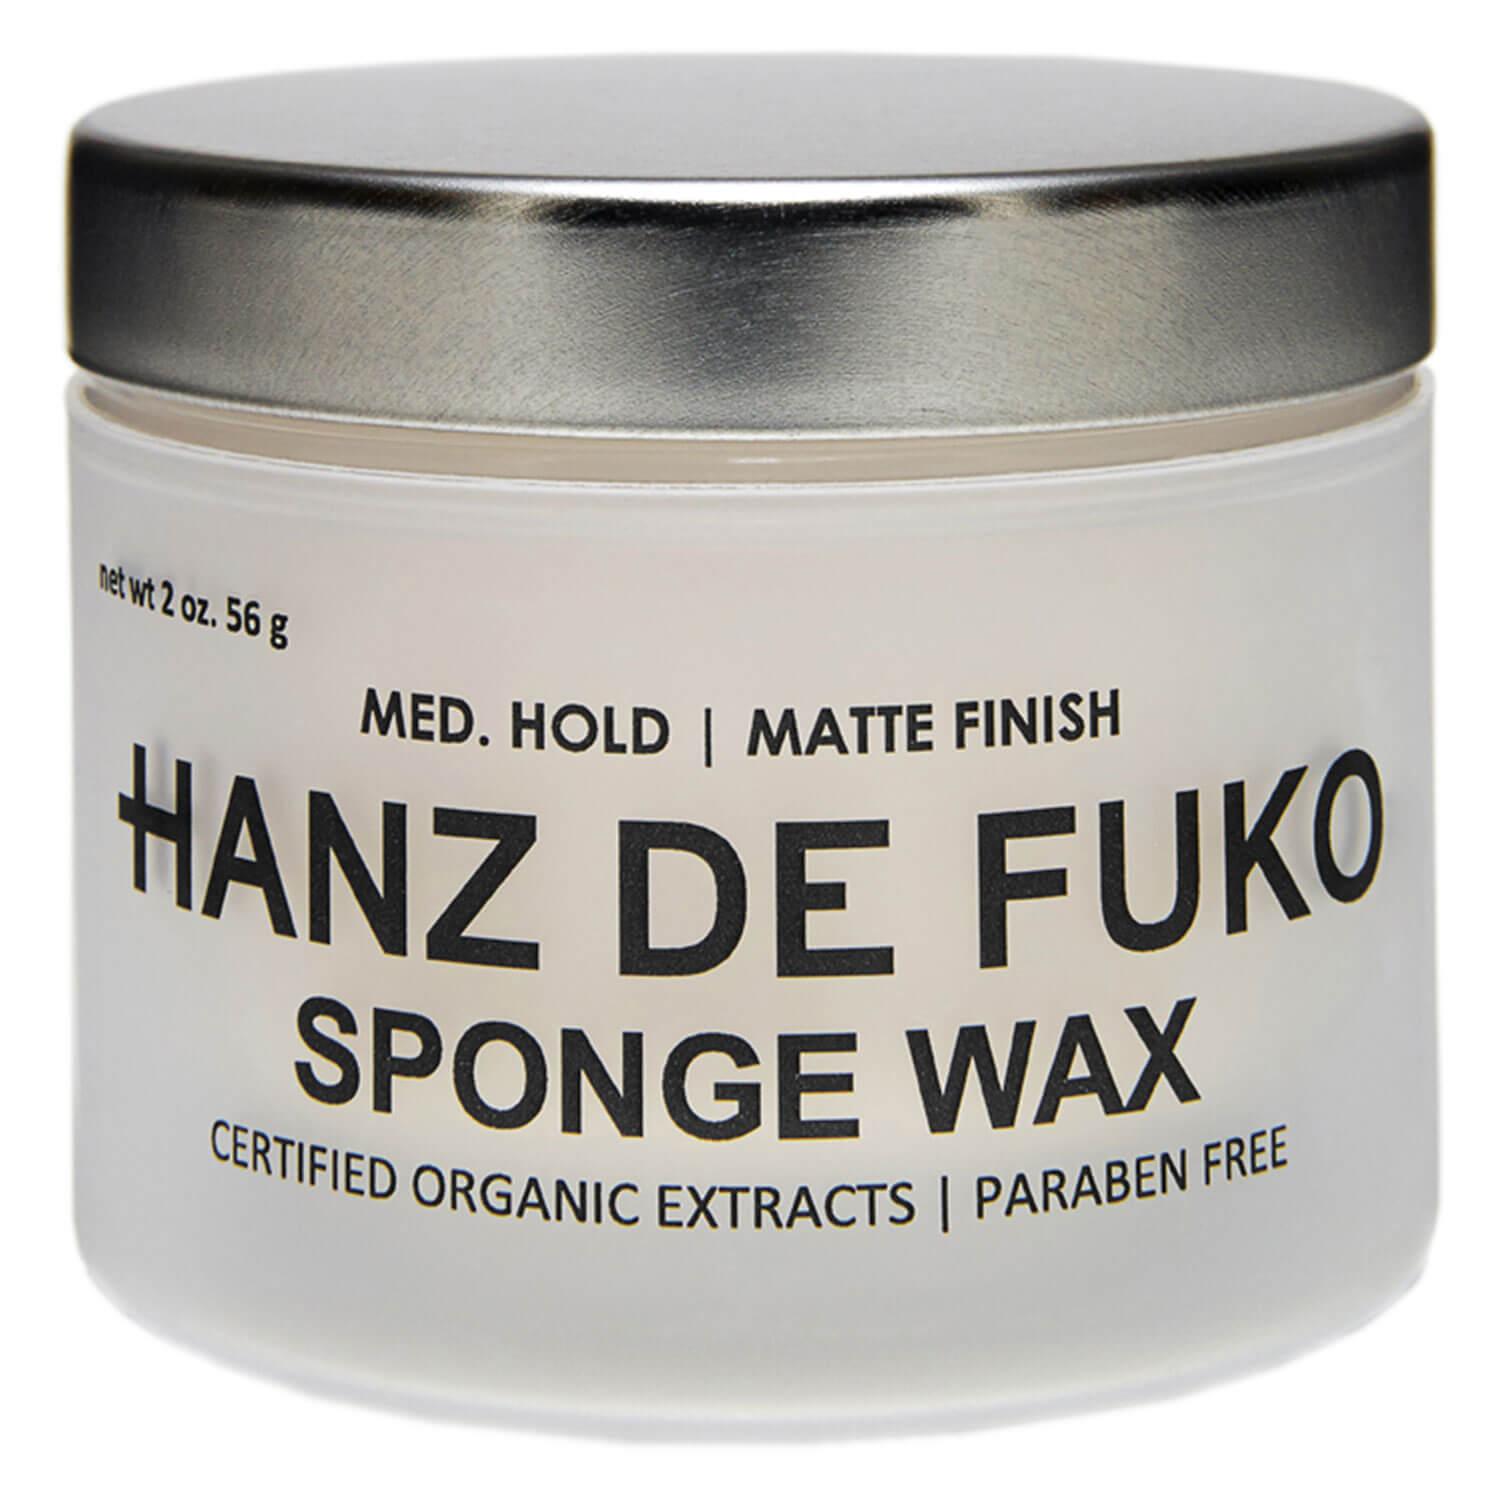 HANZ DE FUKO - Sponge Wax